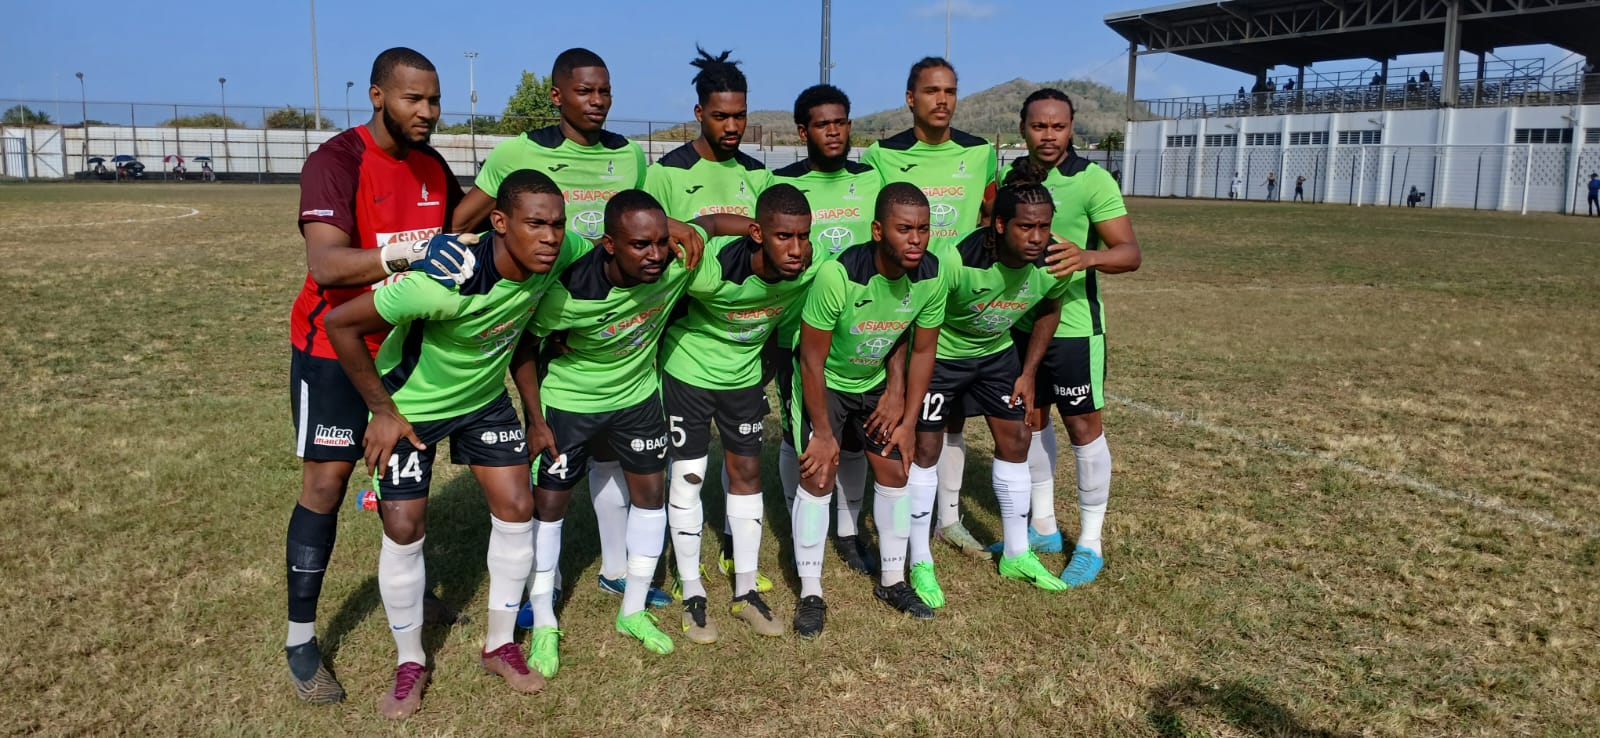     Régional 1 : le Club Franciscain, champion de Martinique de football

